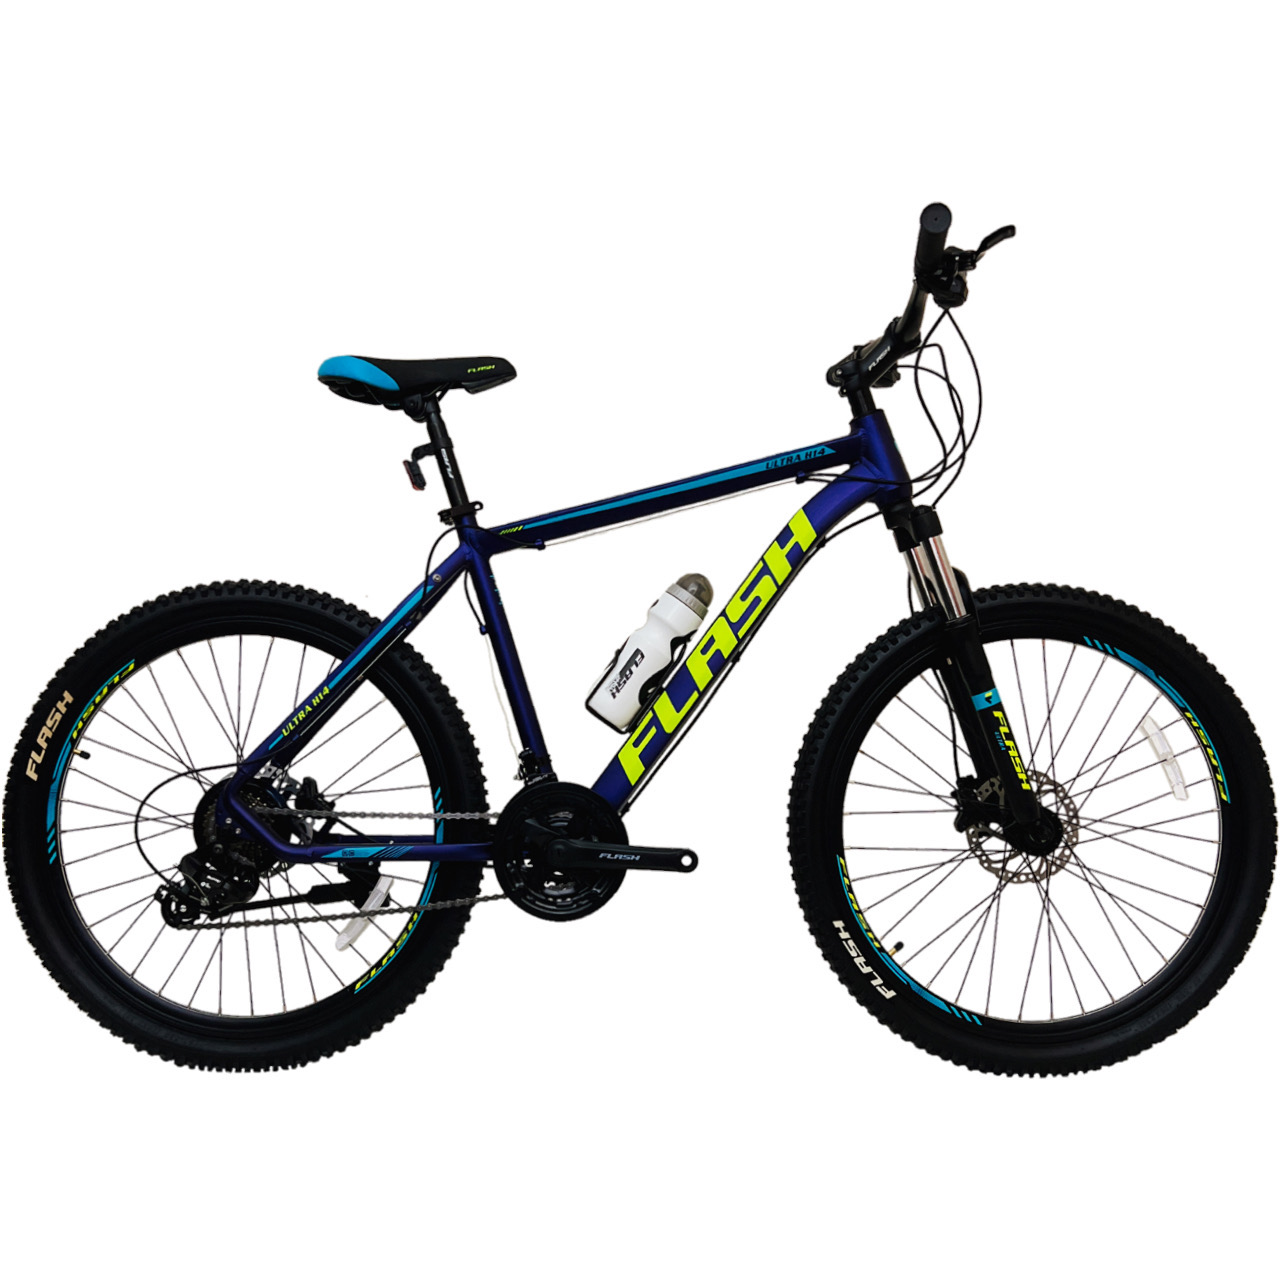 نکته خرید - قیمت روز دوچرخه کوهستان فلش مدل ULTRA H14 کد 1 سایز 26 خرید